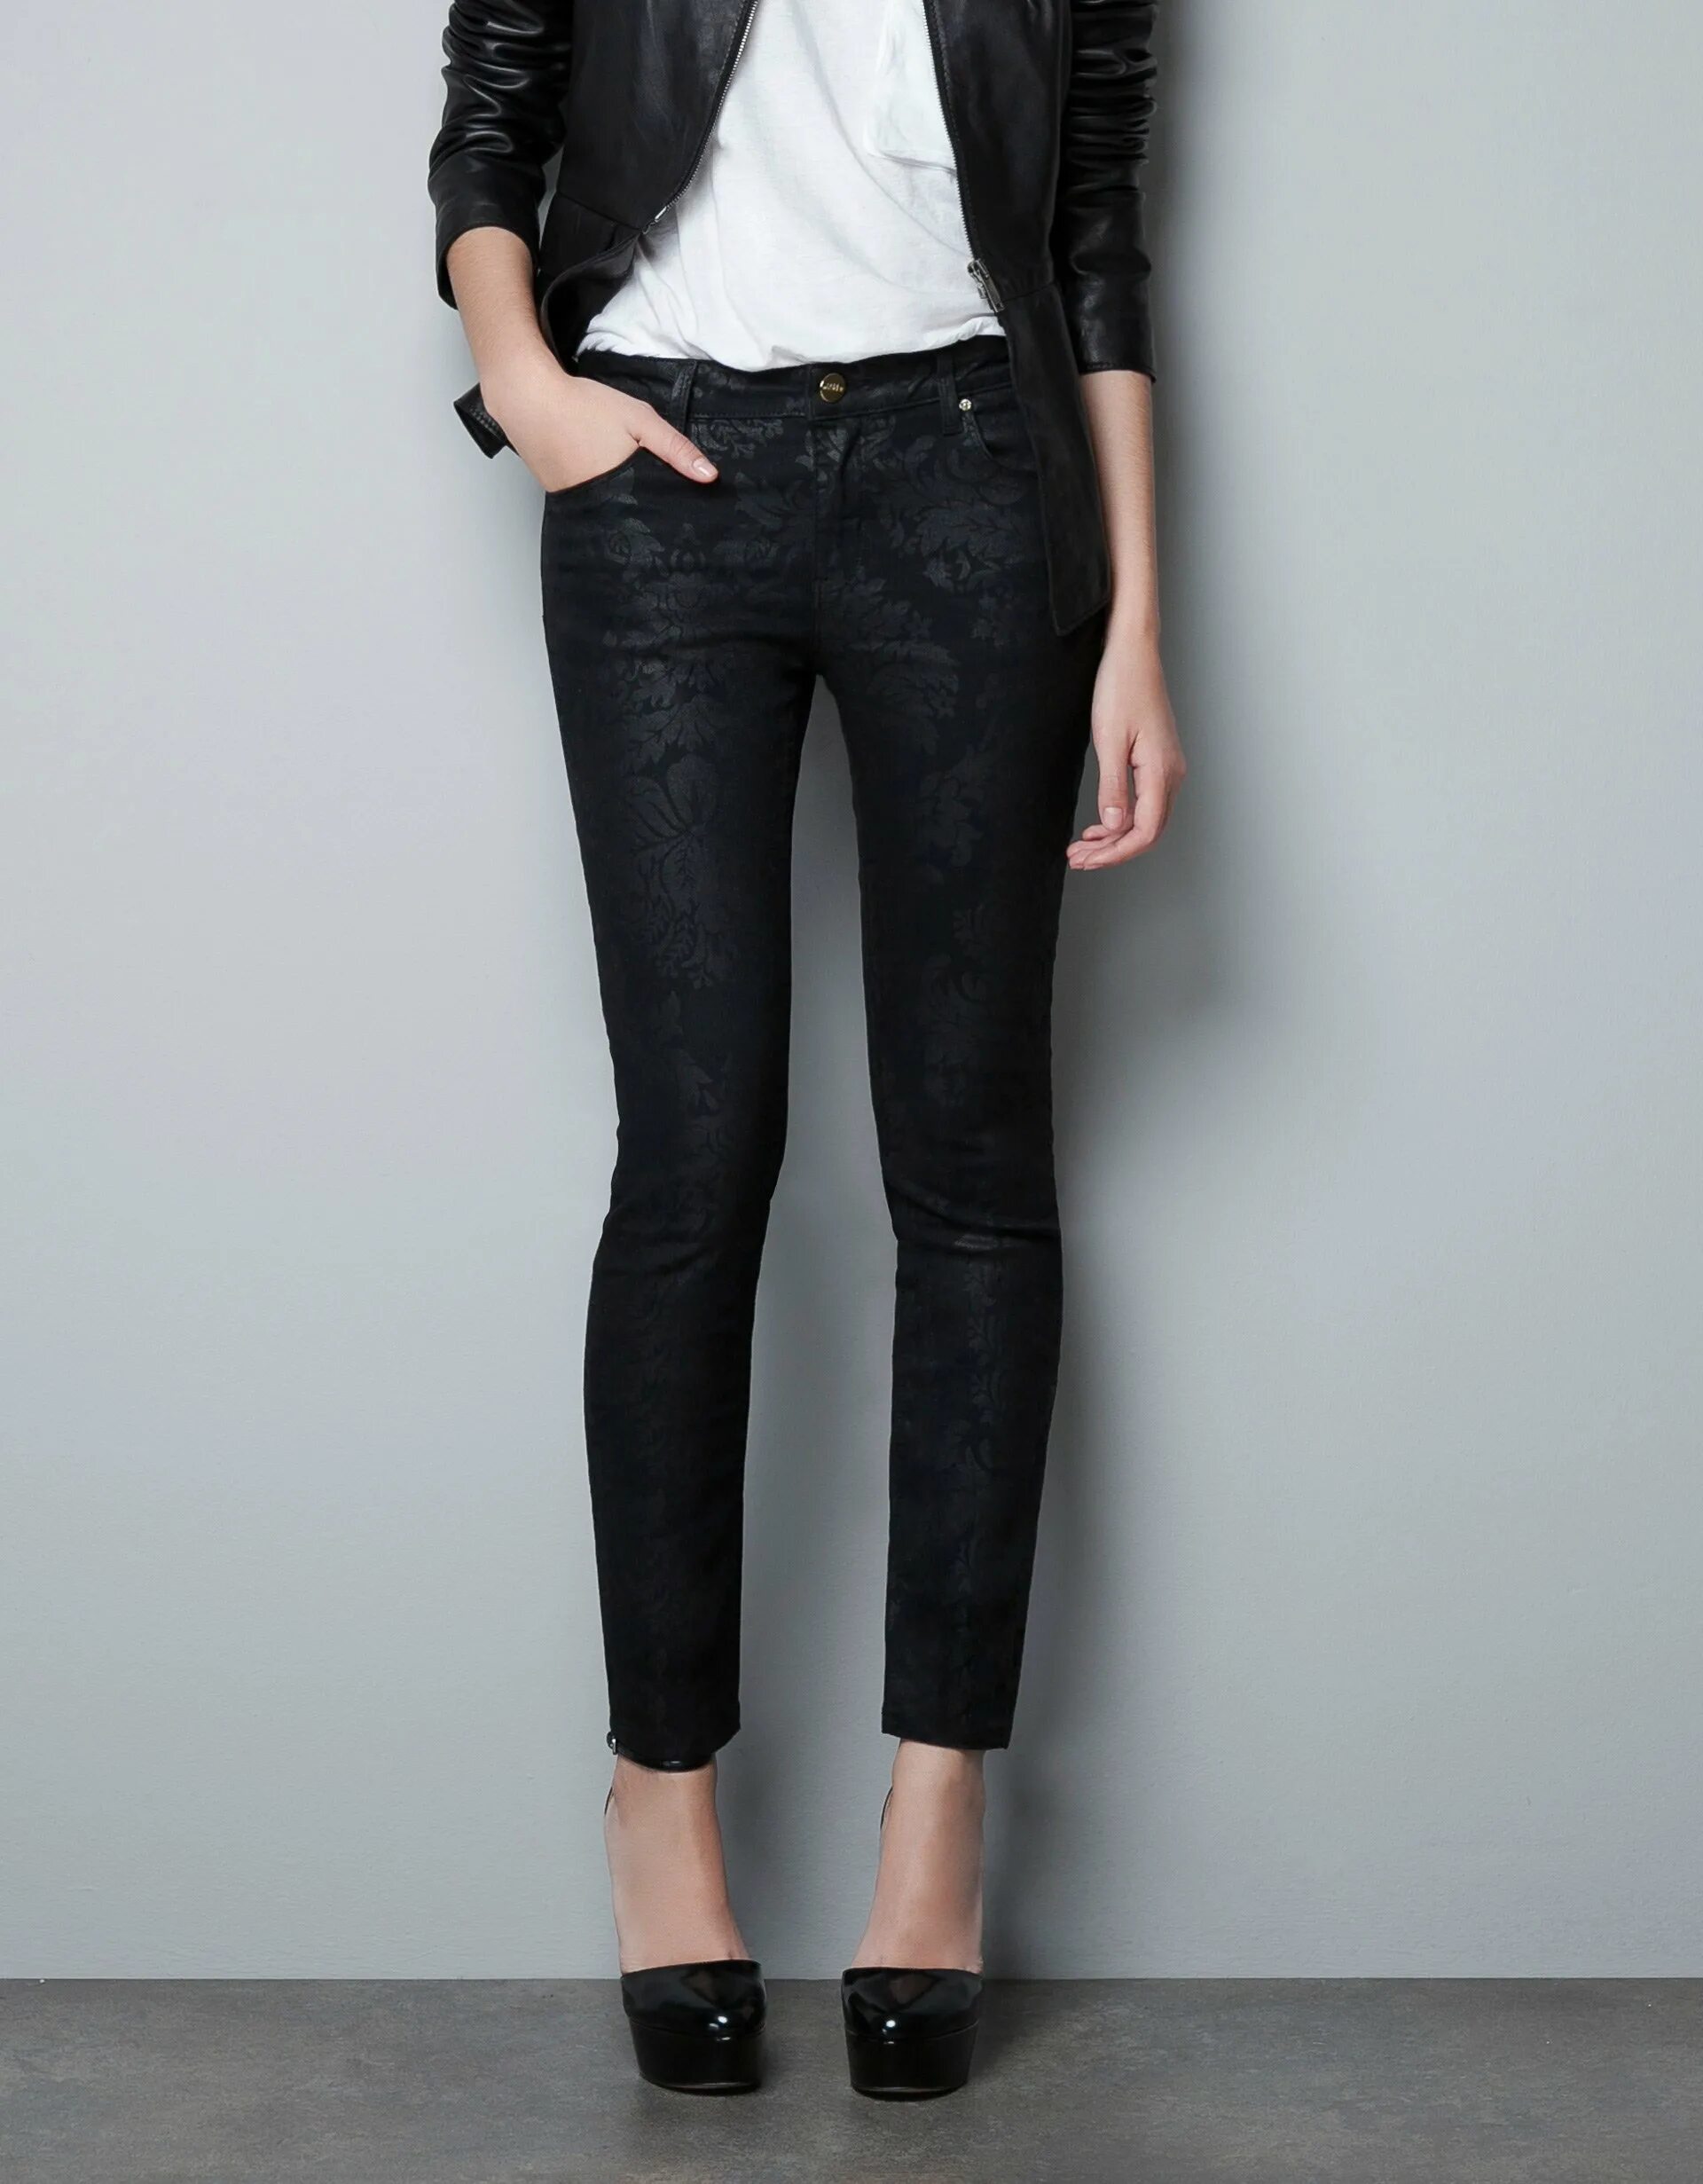 Лучшие черные джинсы. Джинсы Zara женские черные. Джинсы Zara 4365/230 черные. Чёрные узкие джинсы женские. Женские джинсы черные зауженные.